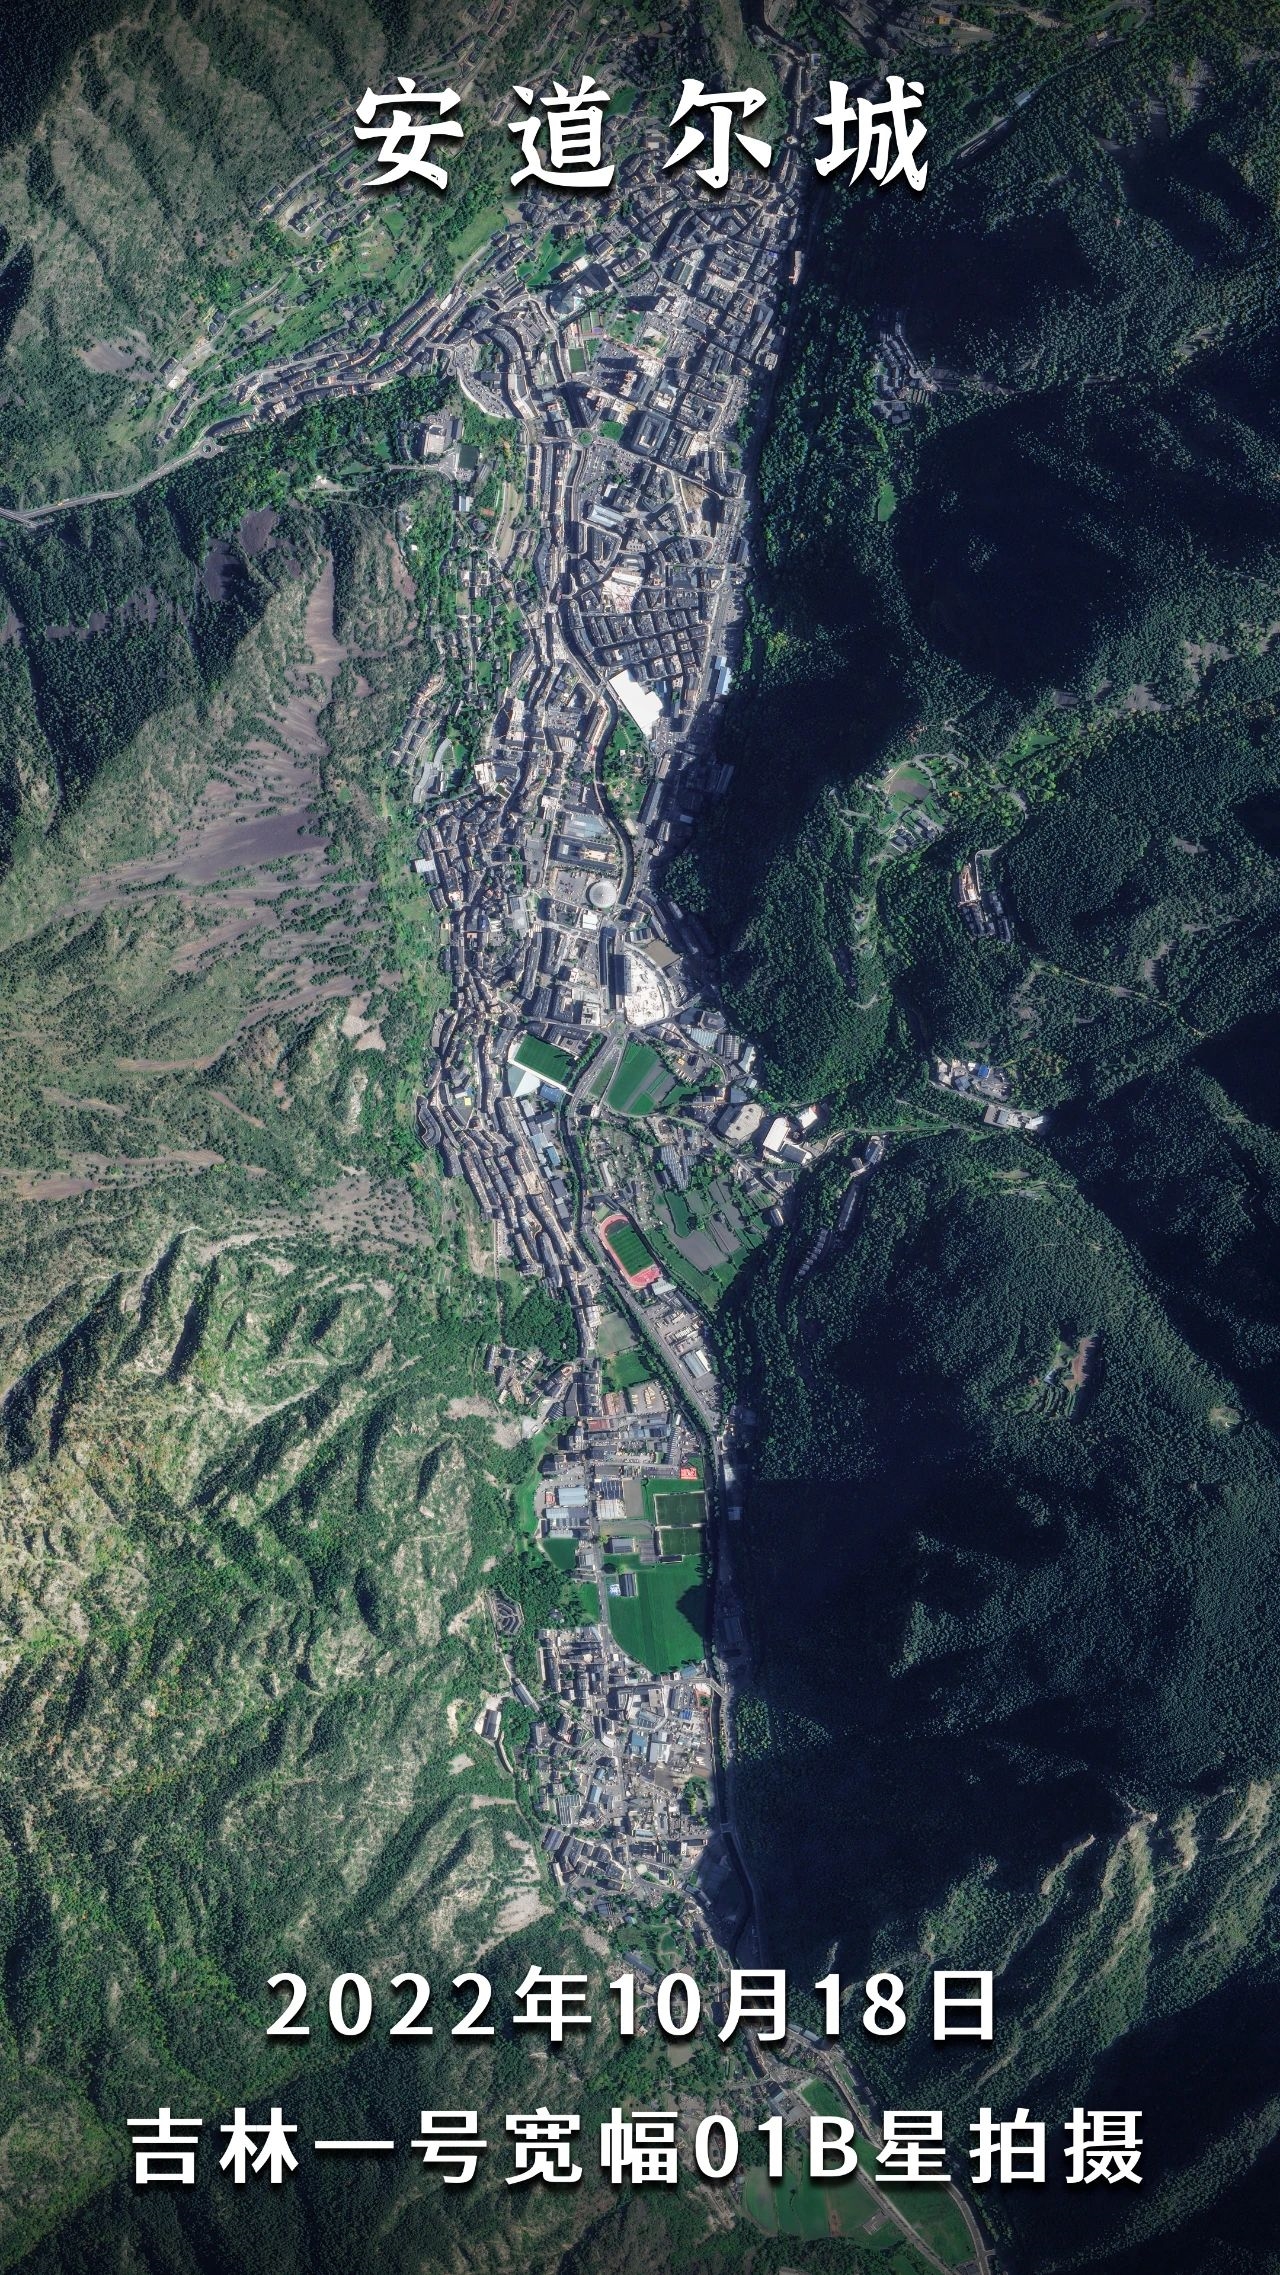 一大群微信好友来自这里：卫星看藏在山里的袖珍小国安道尔